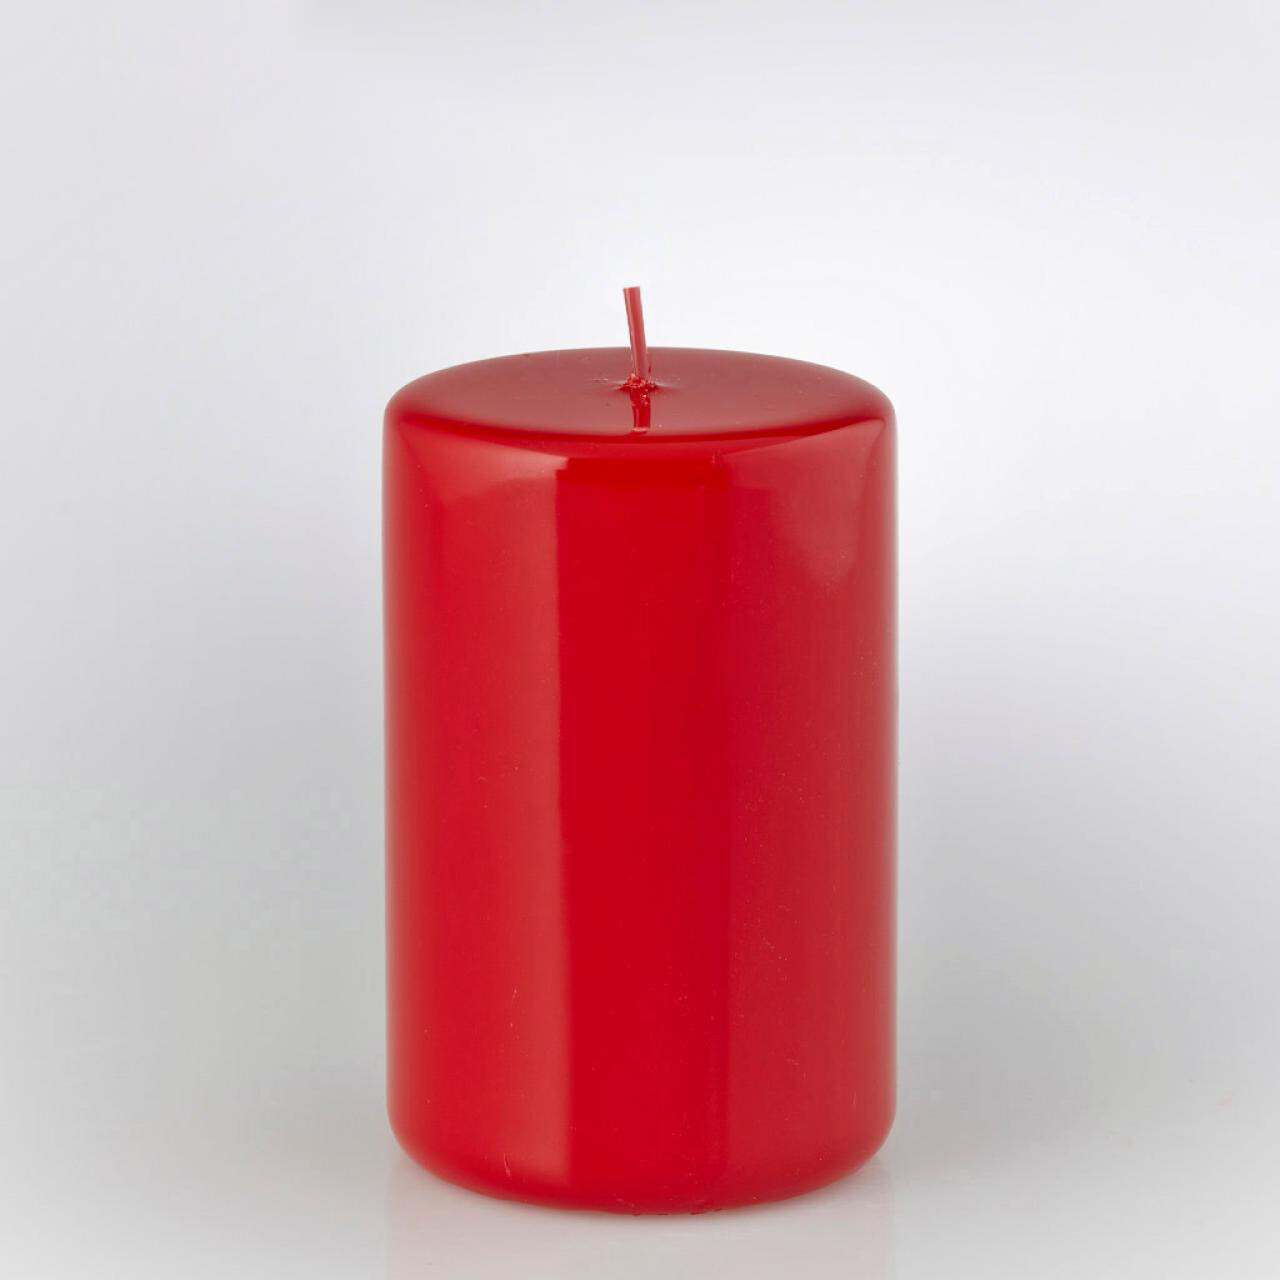 Candela moccolo rosso laccato - H. 15 cm - EDG